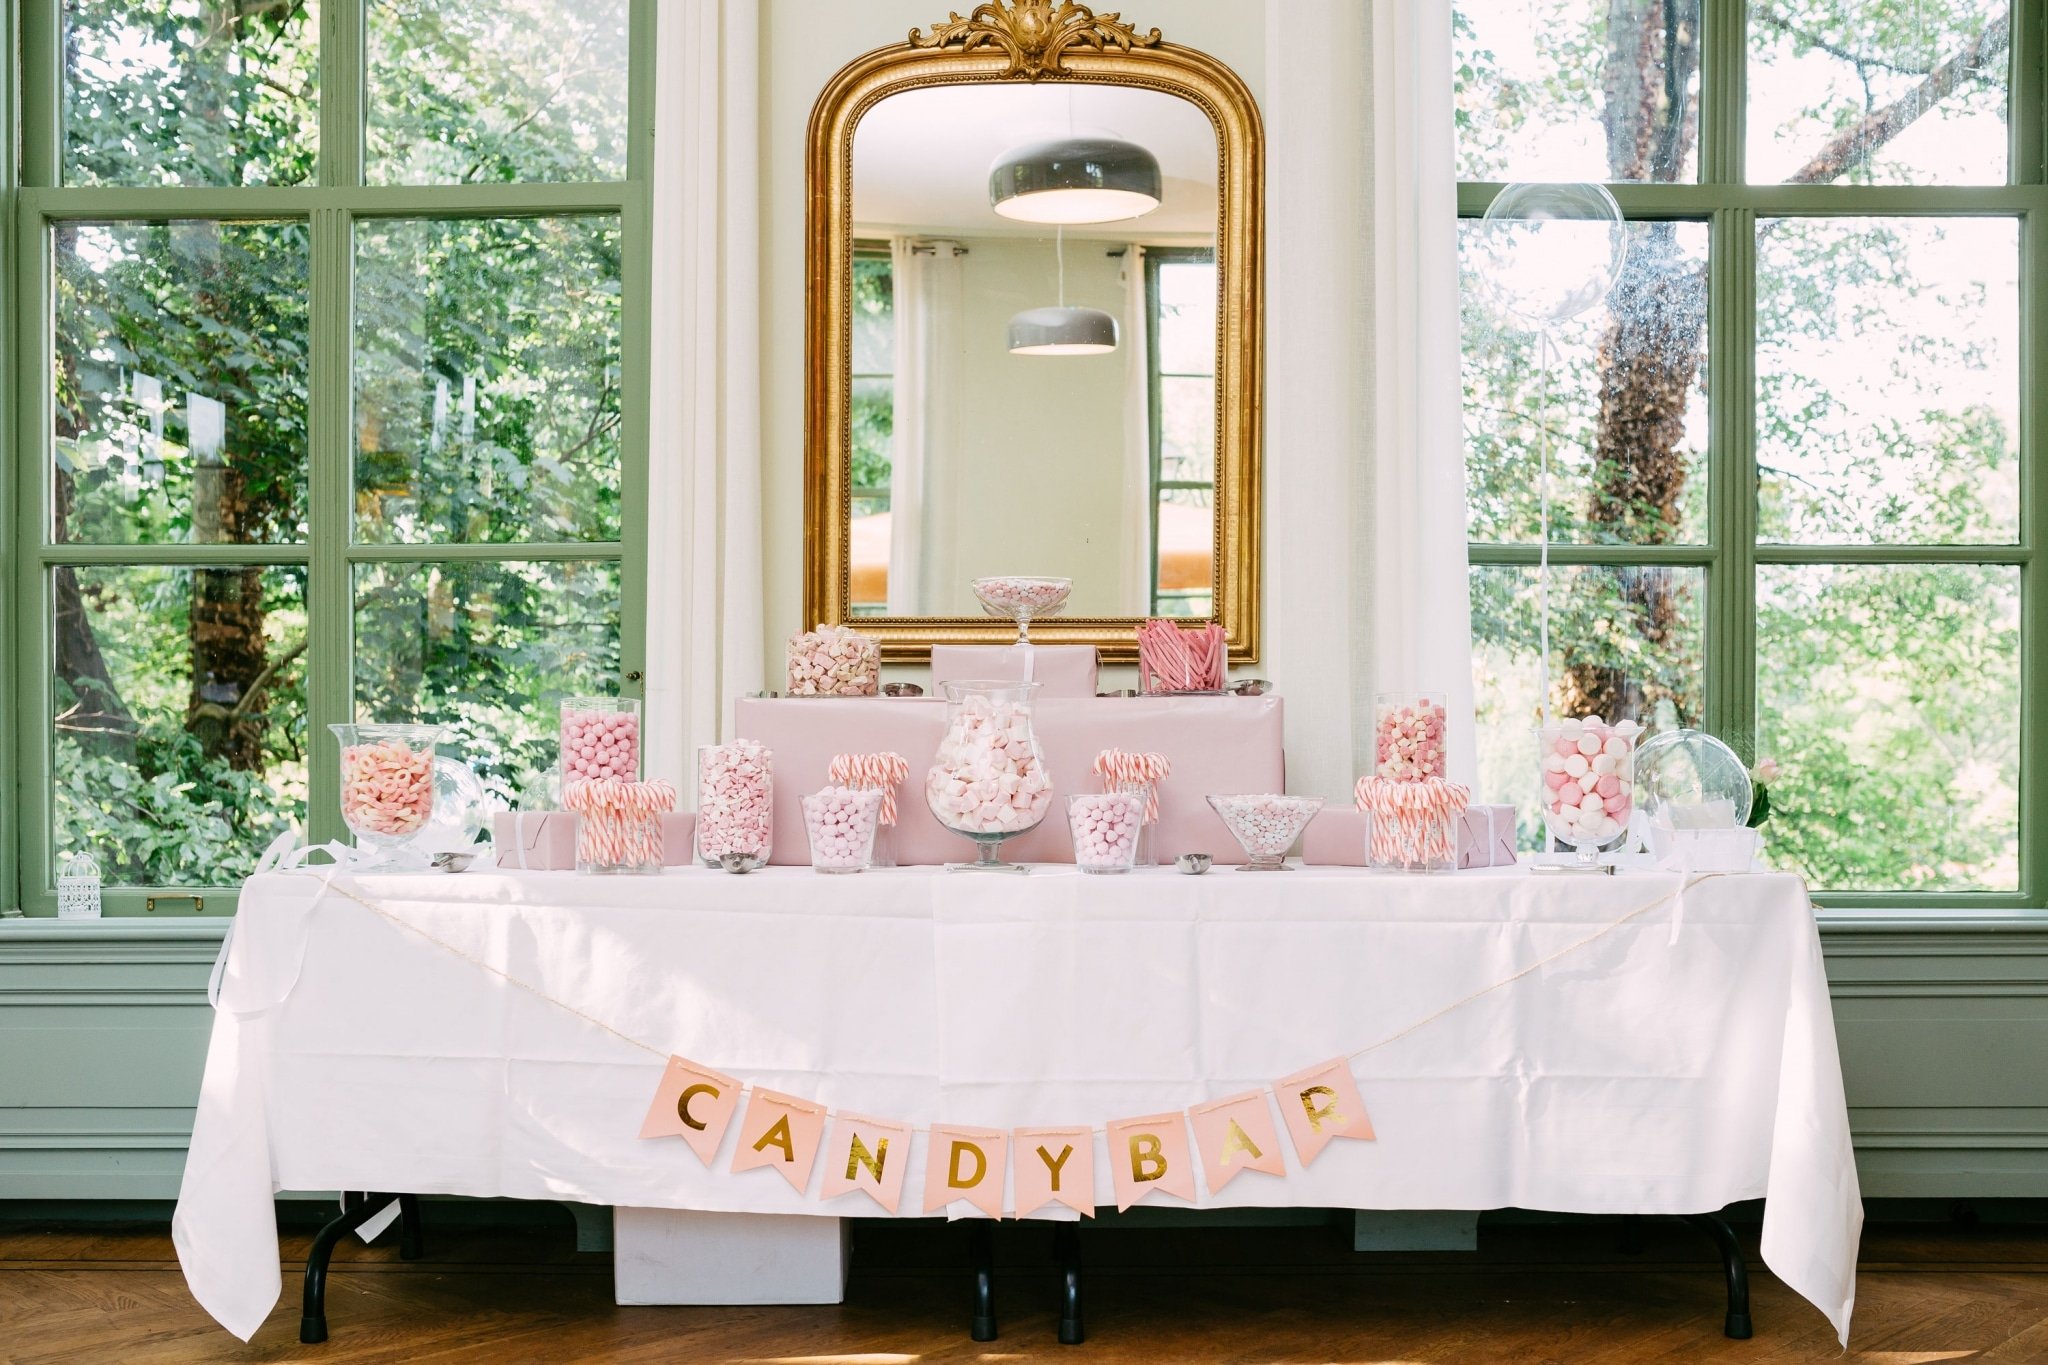 Candy bar wedding